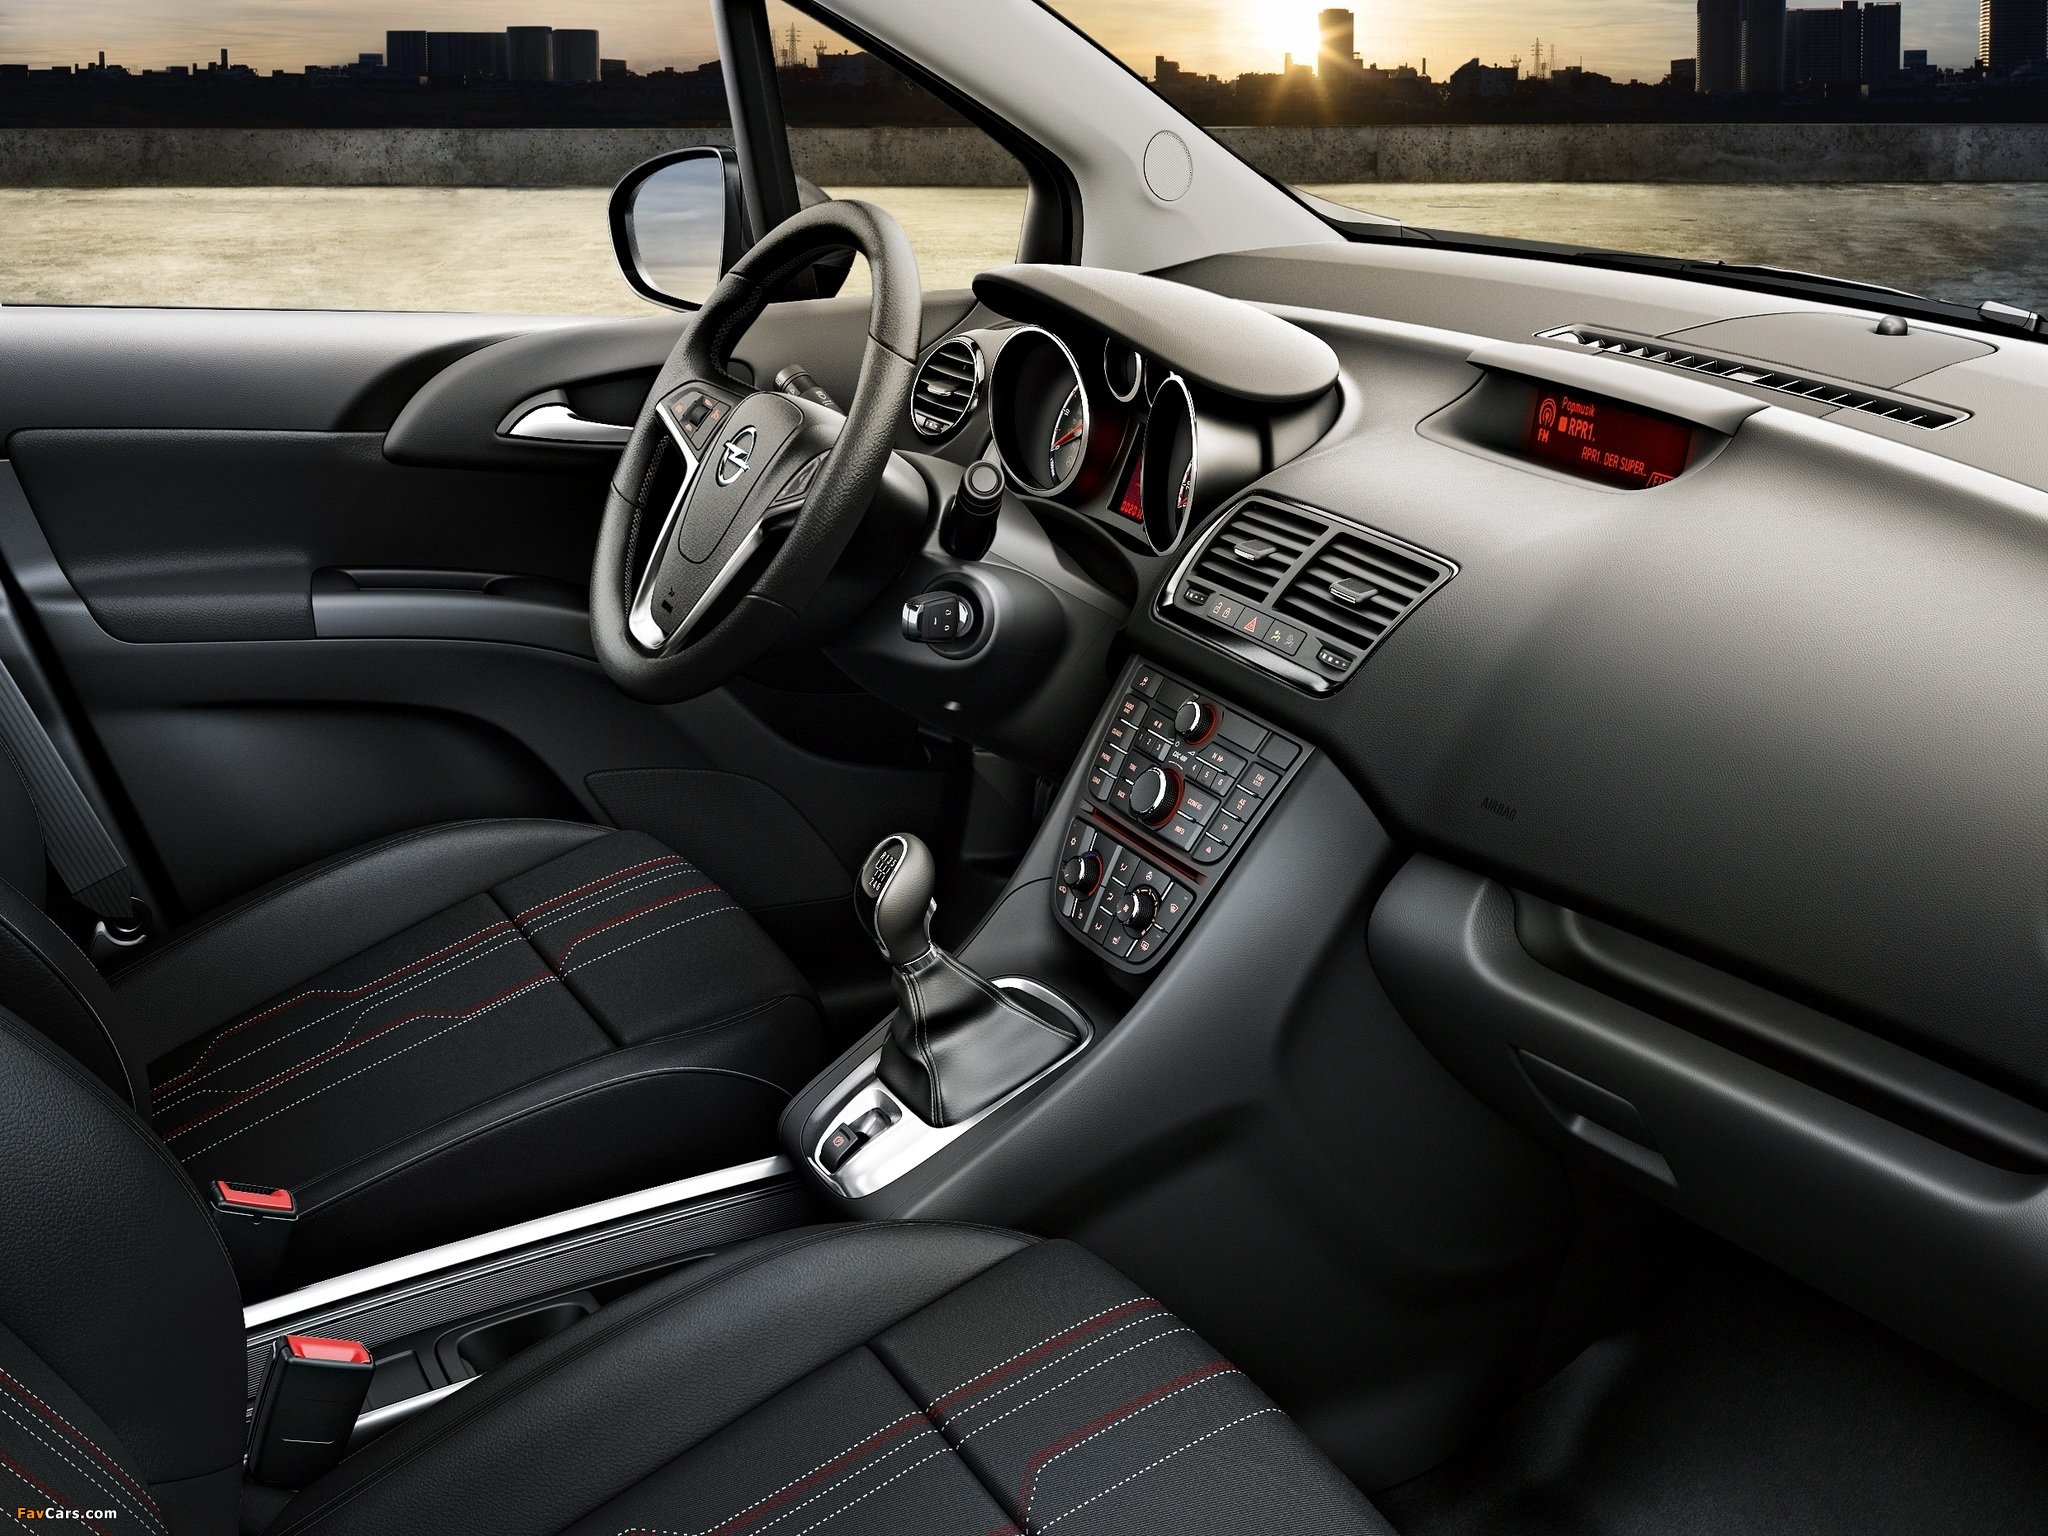 Opel Meriva interior - Cockpit